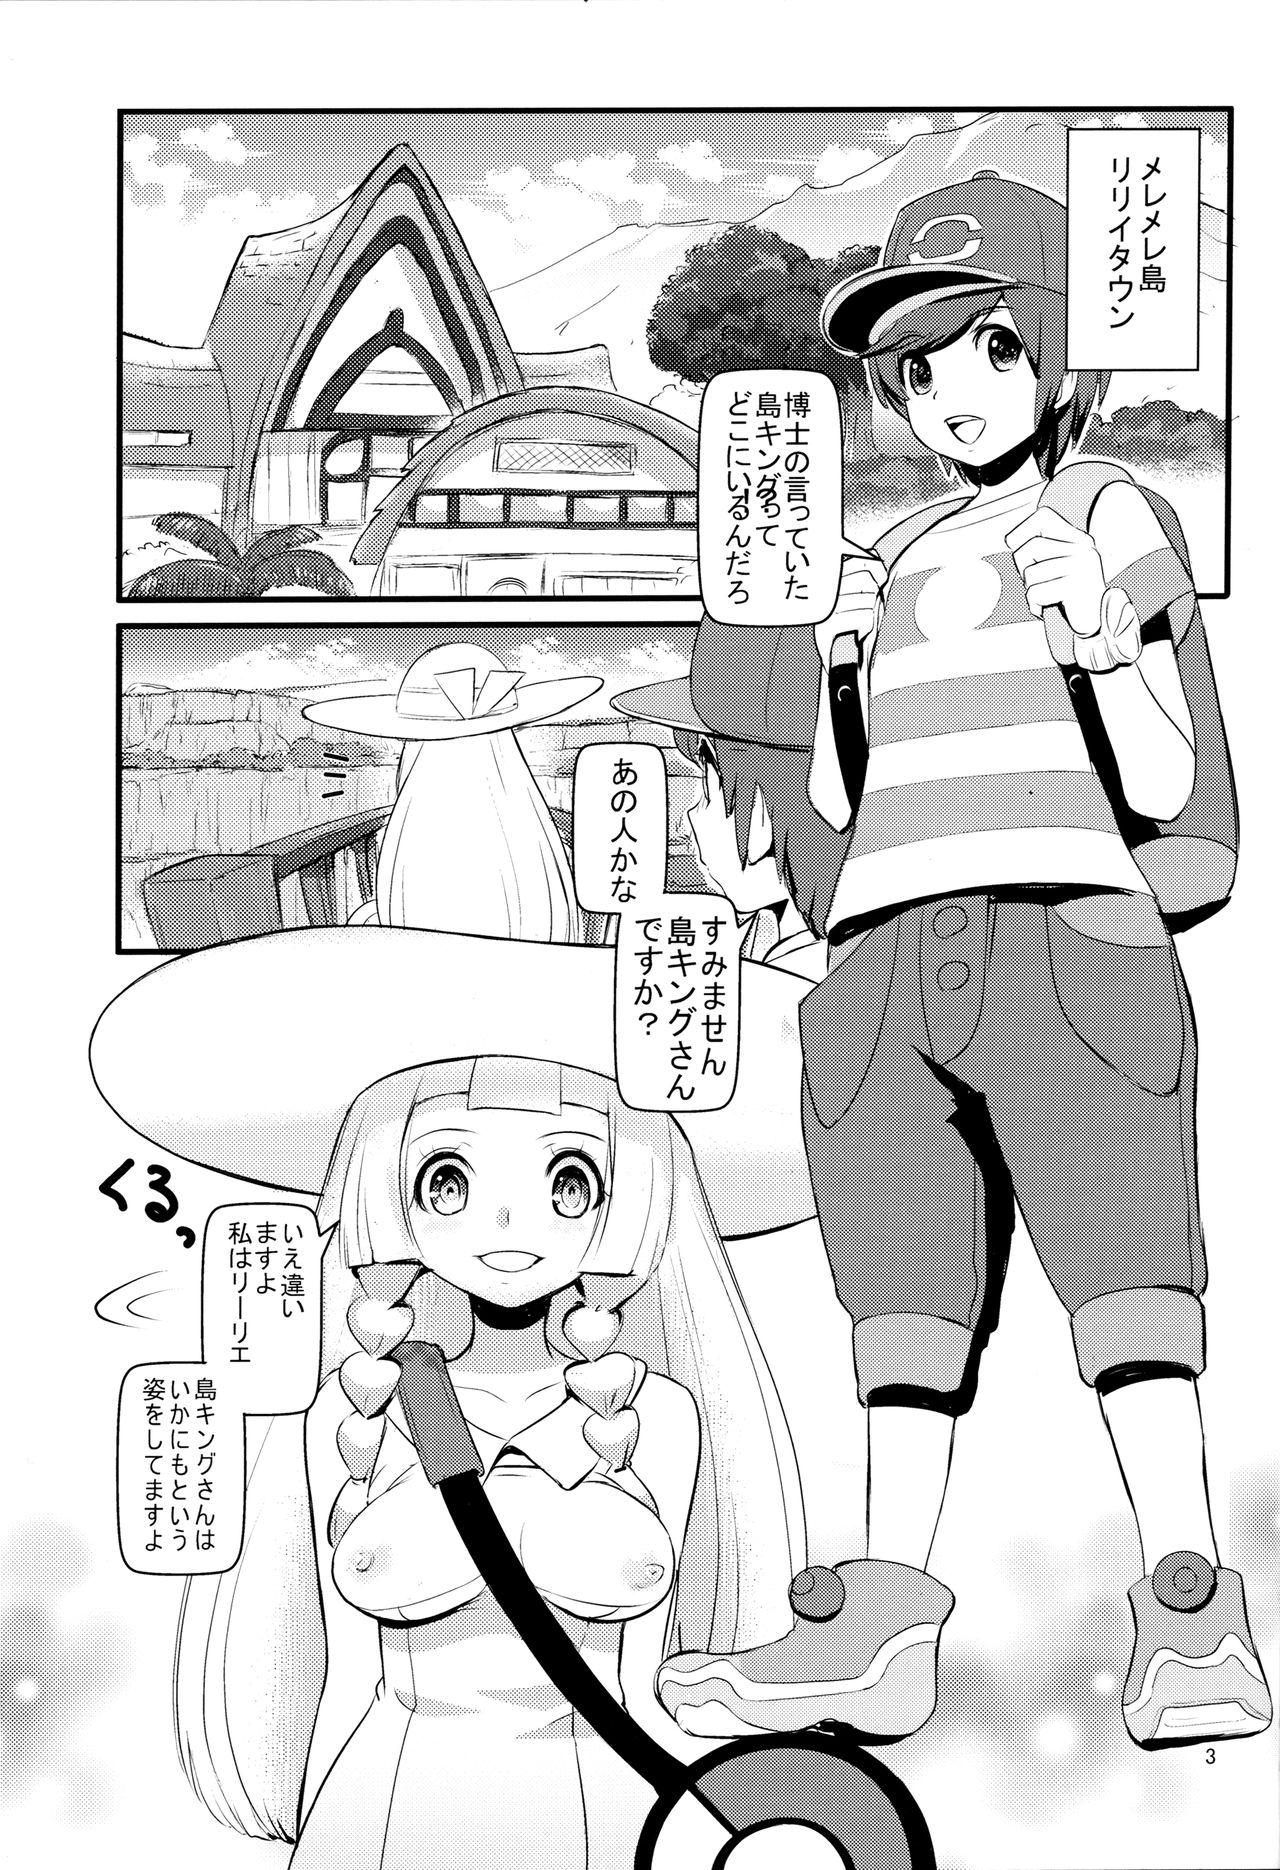 Nuru PUA LANI - Pokemon 18yearsold - Page 2